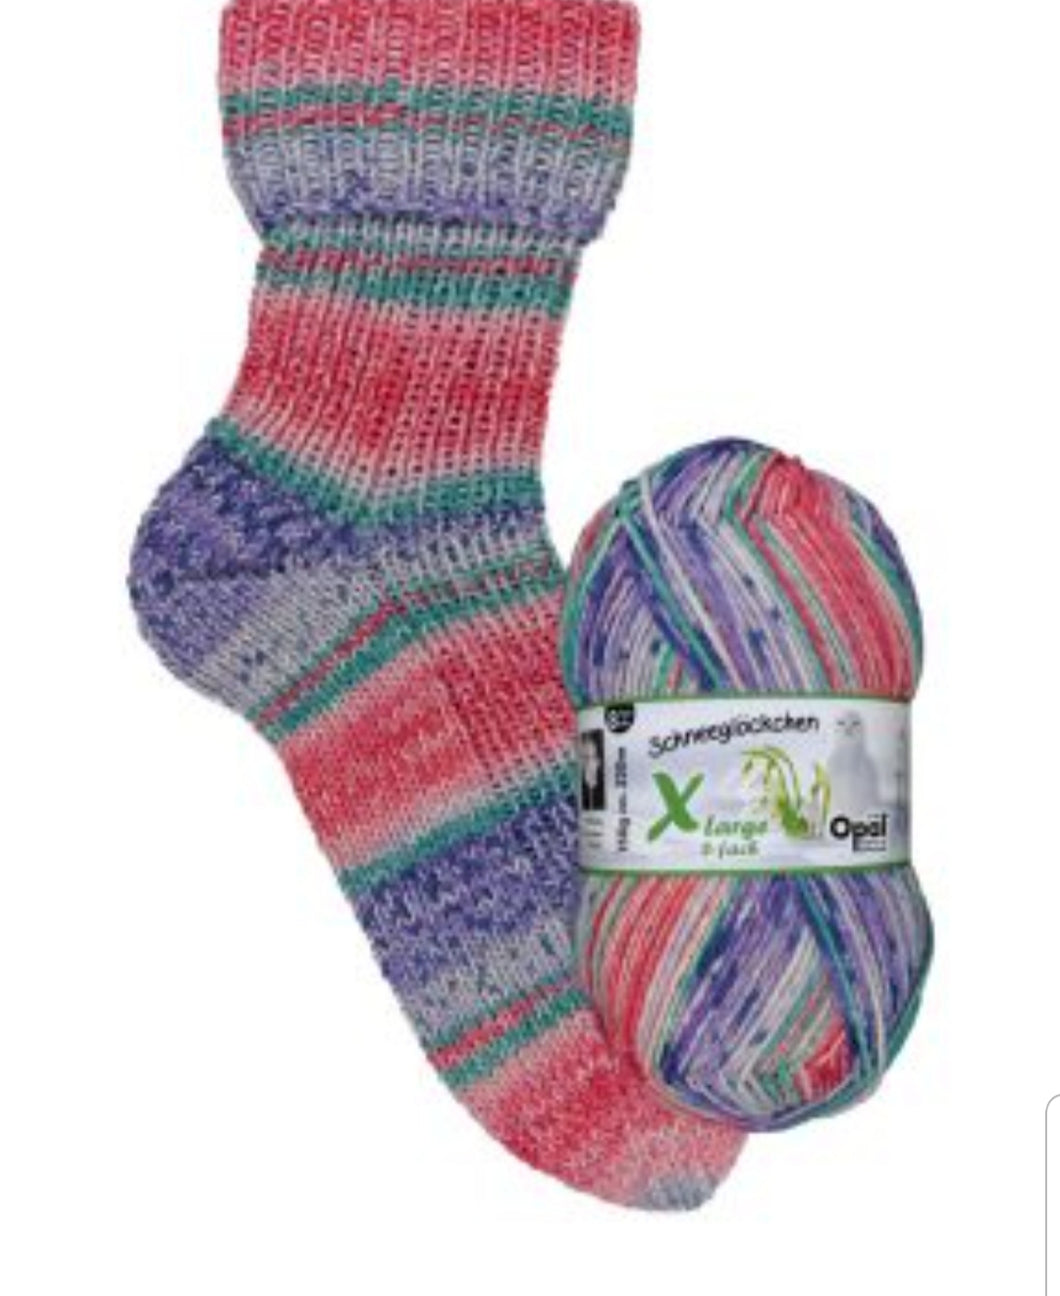 Opal 8ply sock yarn